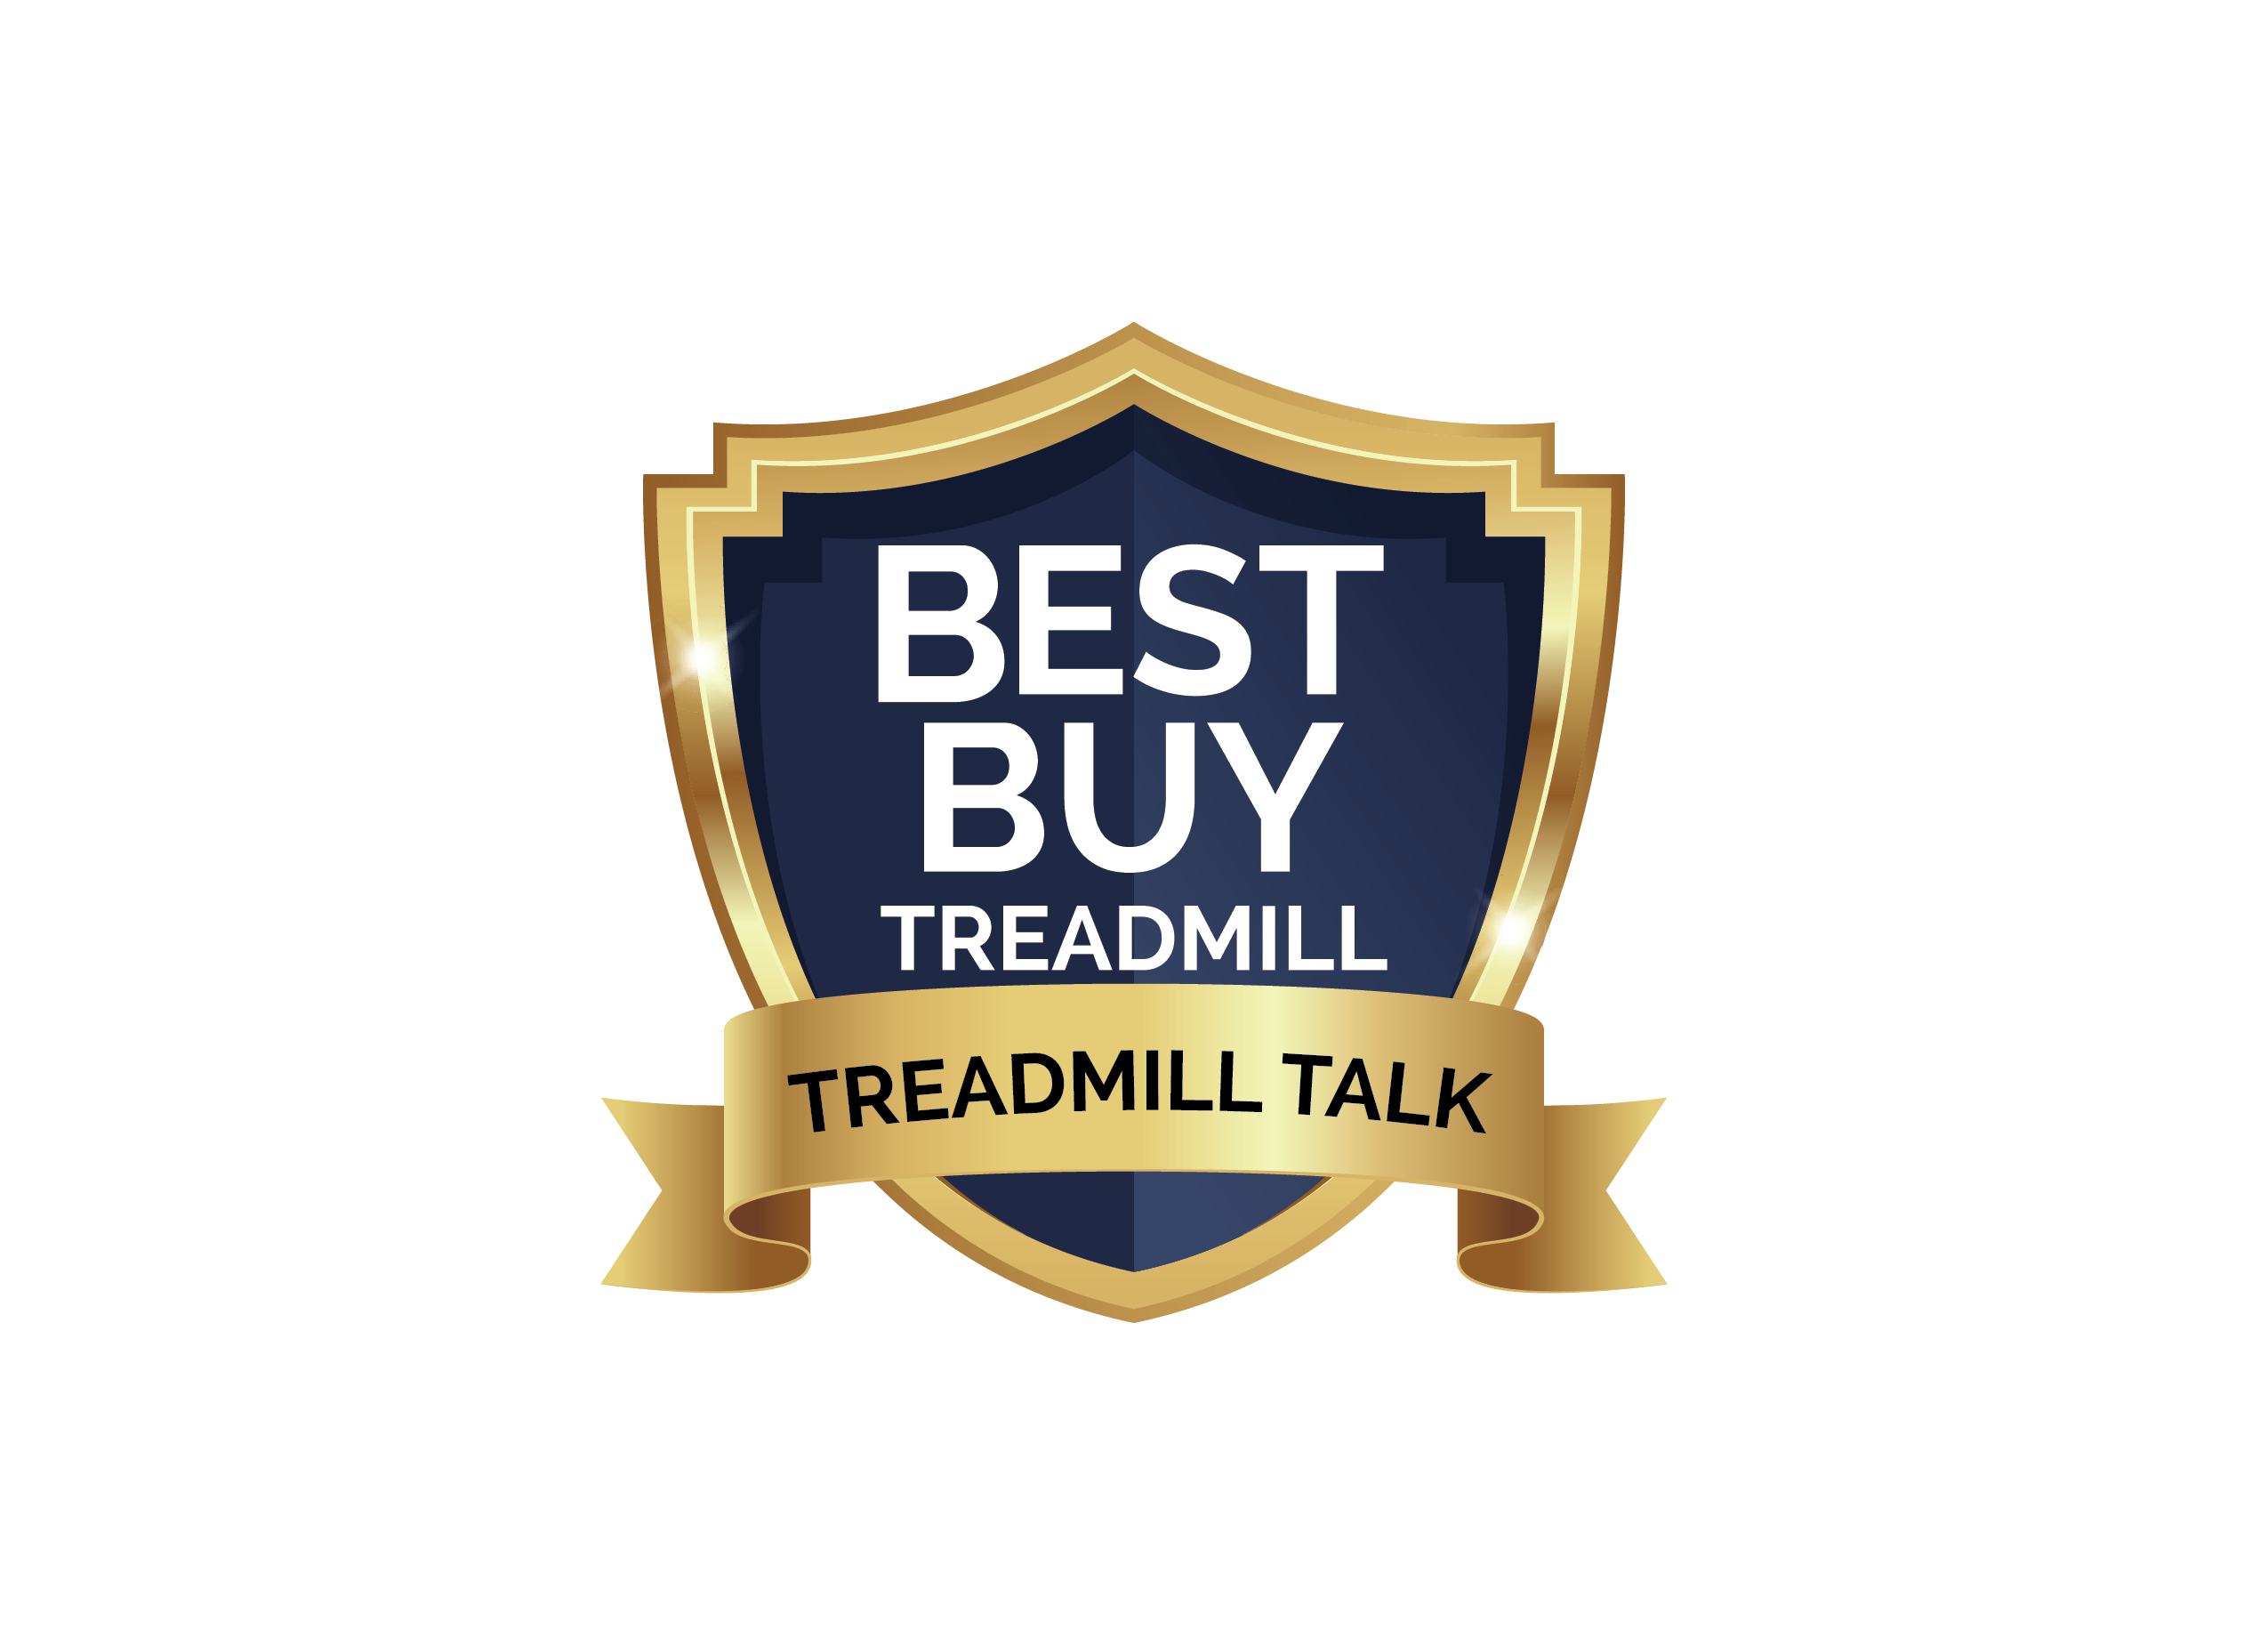 Treadmill Talk Best Buy Award